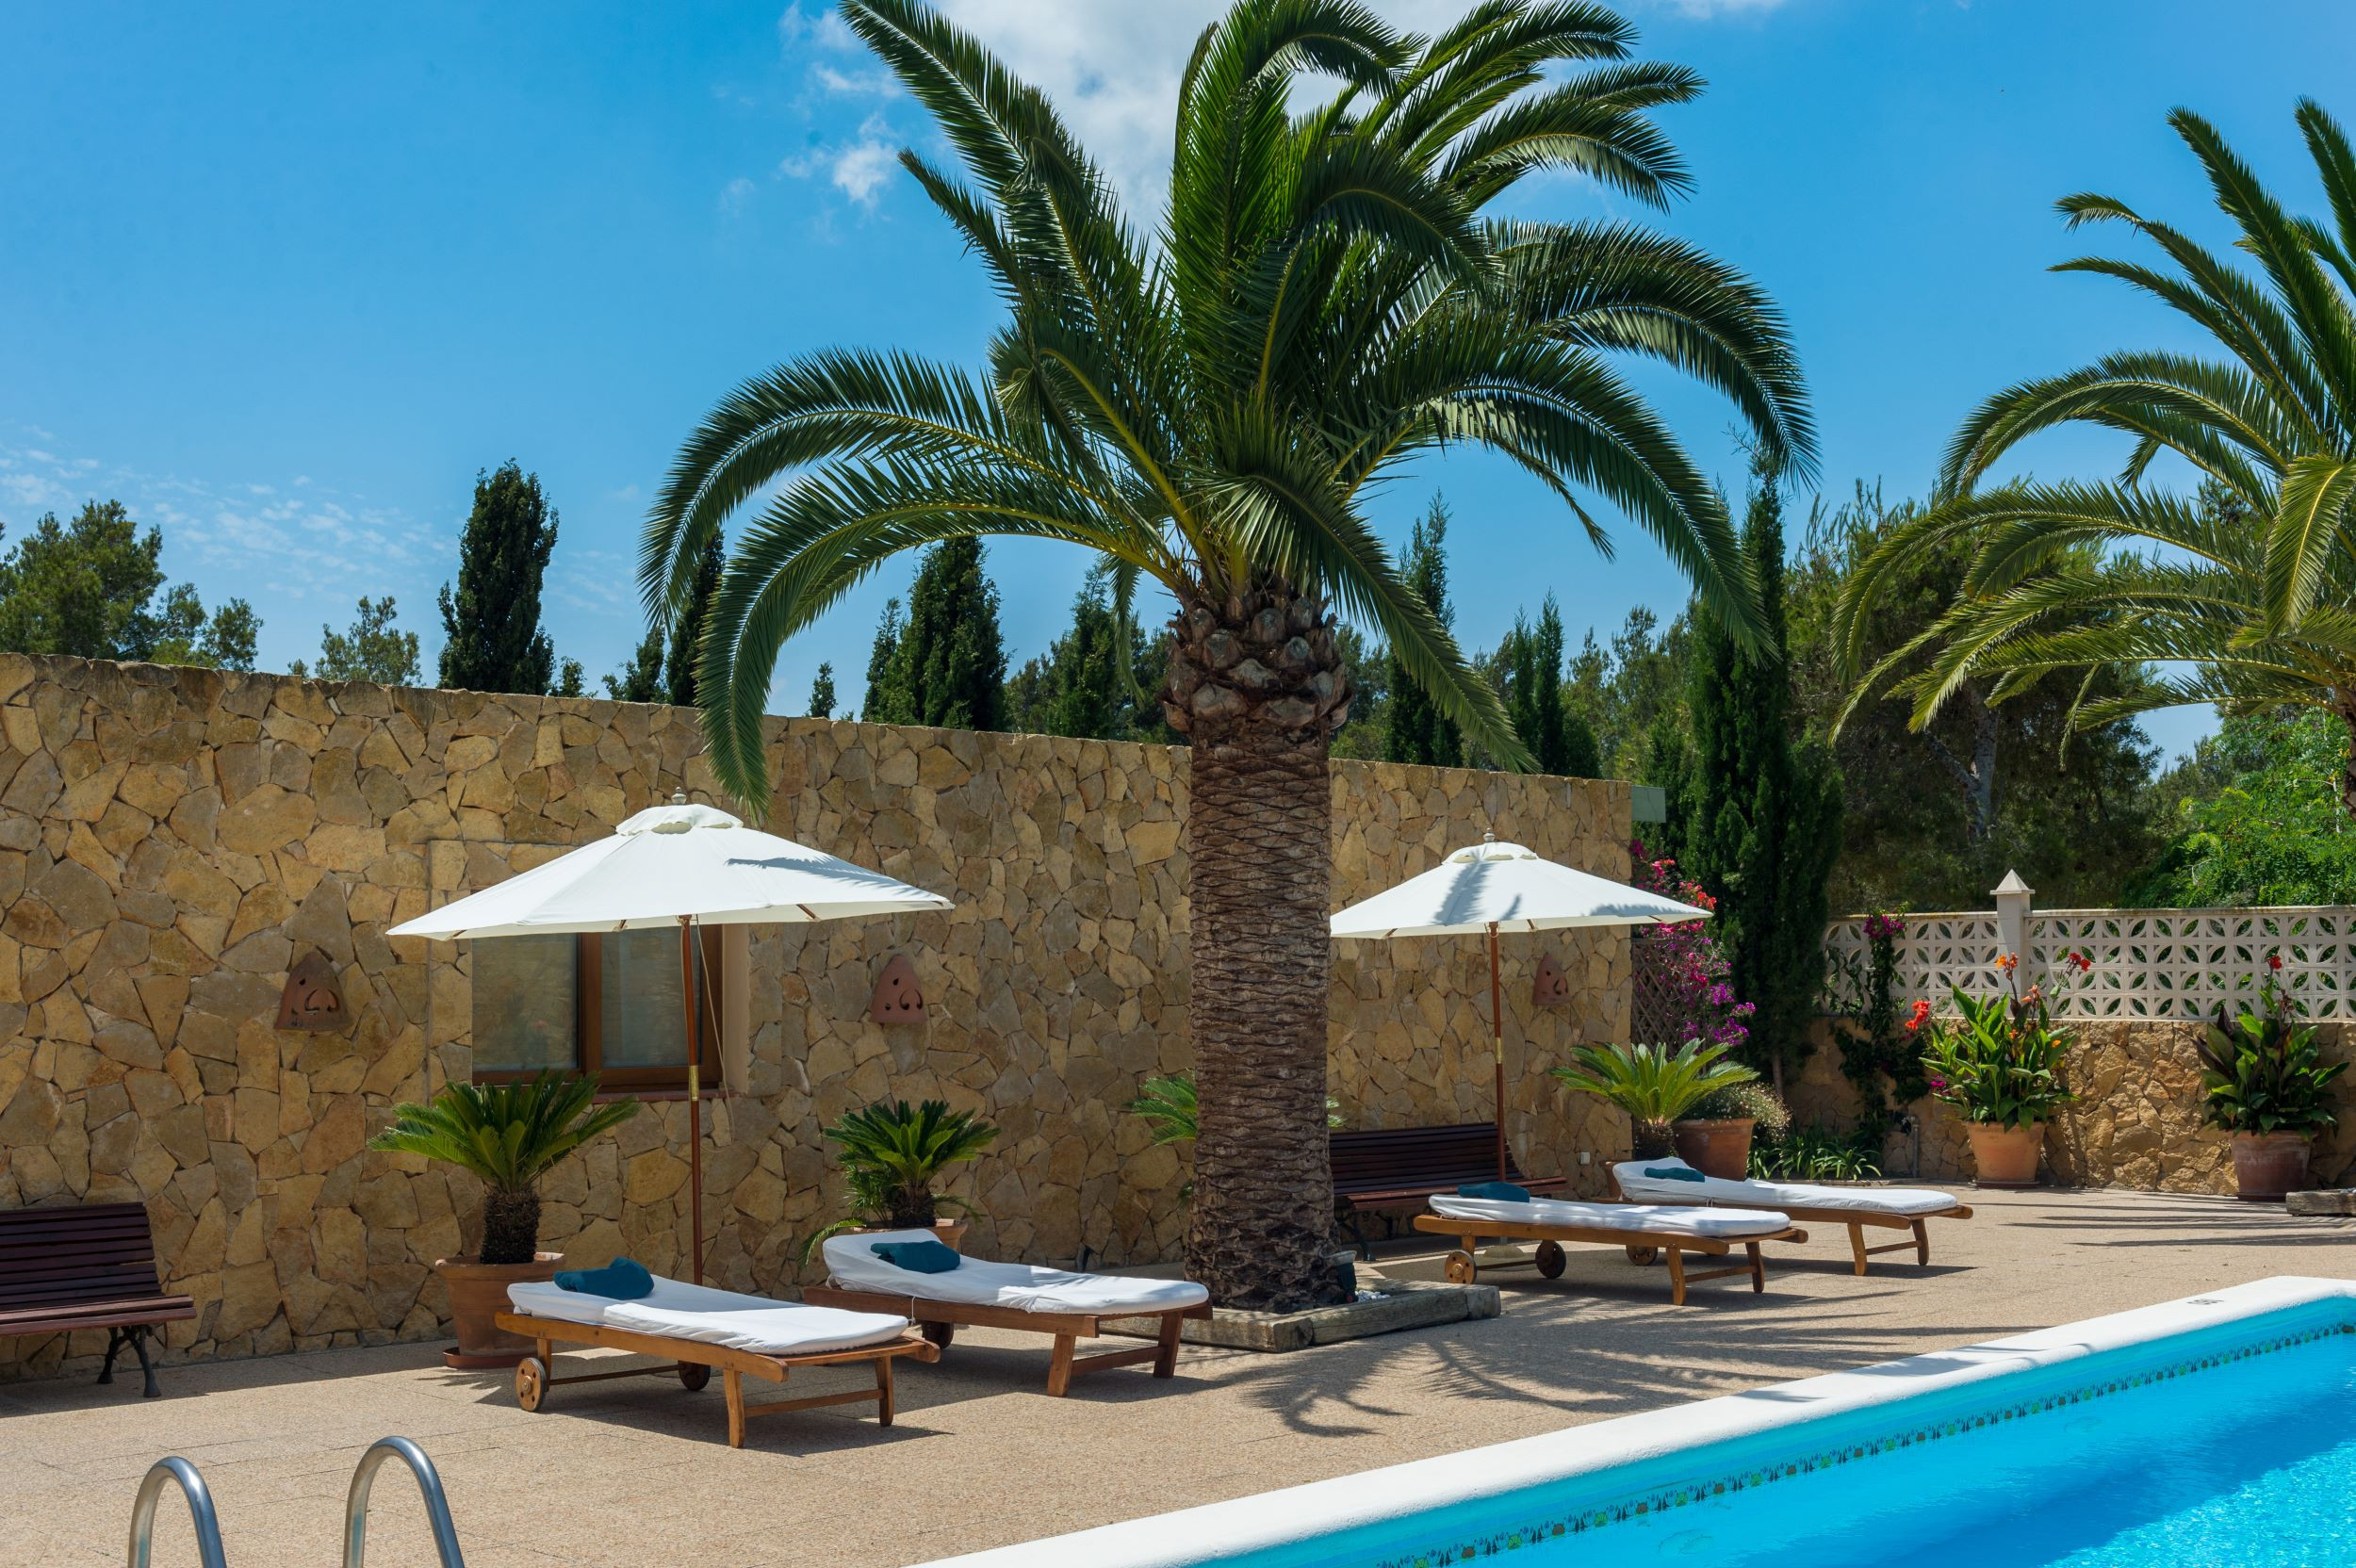 Stijlvolle Spaanse villa Casa Maravilla, met privé zwembad, buitenkeuken en grote tuin met bloemen en planten